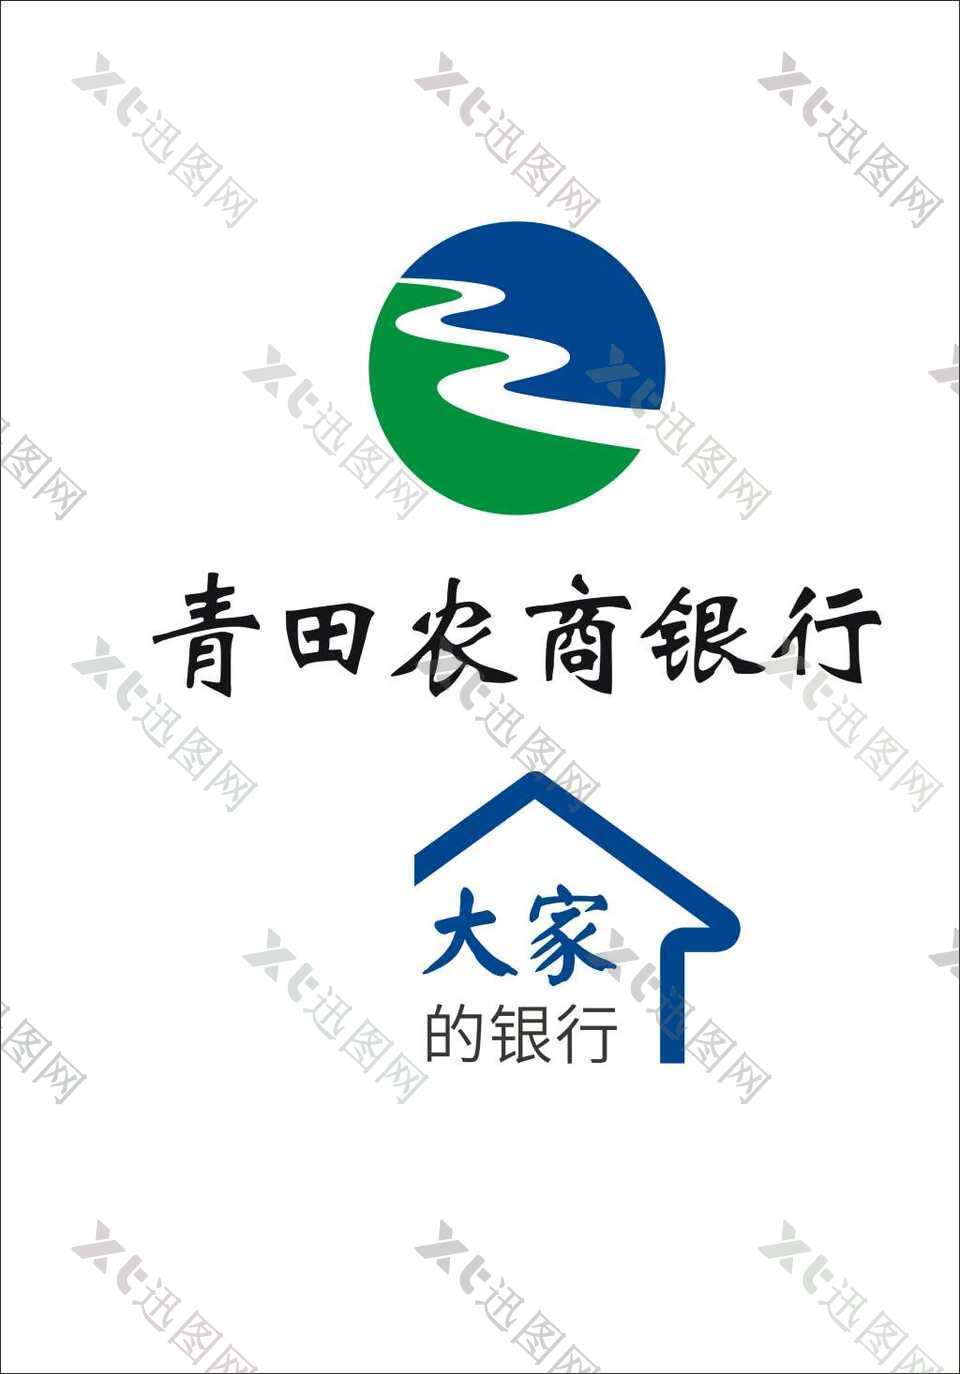 青田农商银行logo